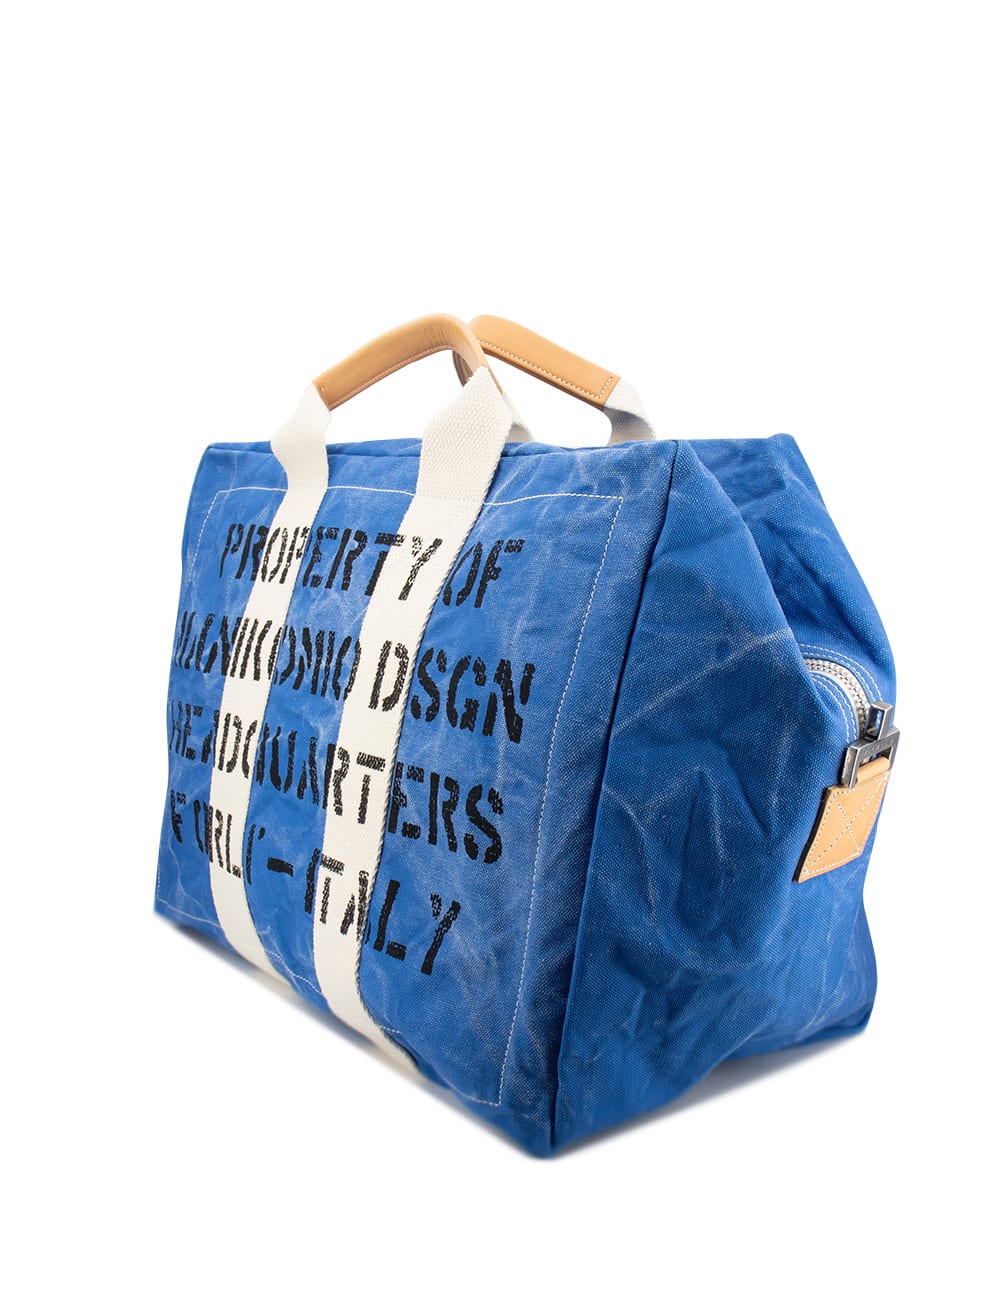 Shop Manikomio Dsgn Bag In Navy Blue